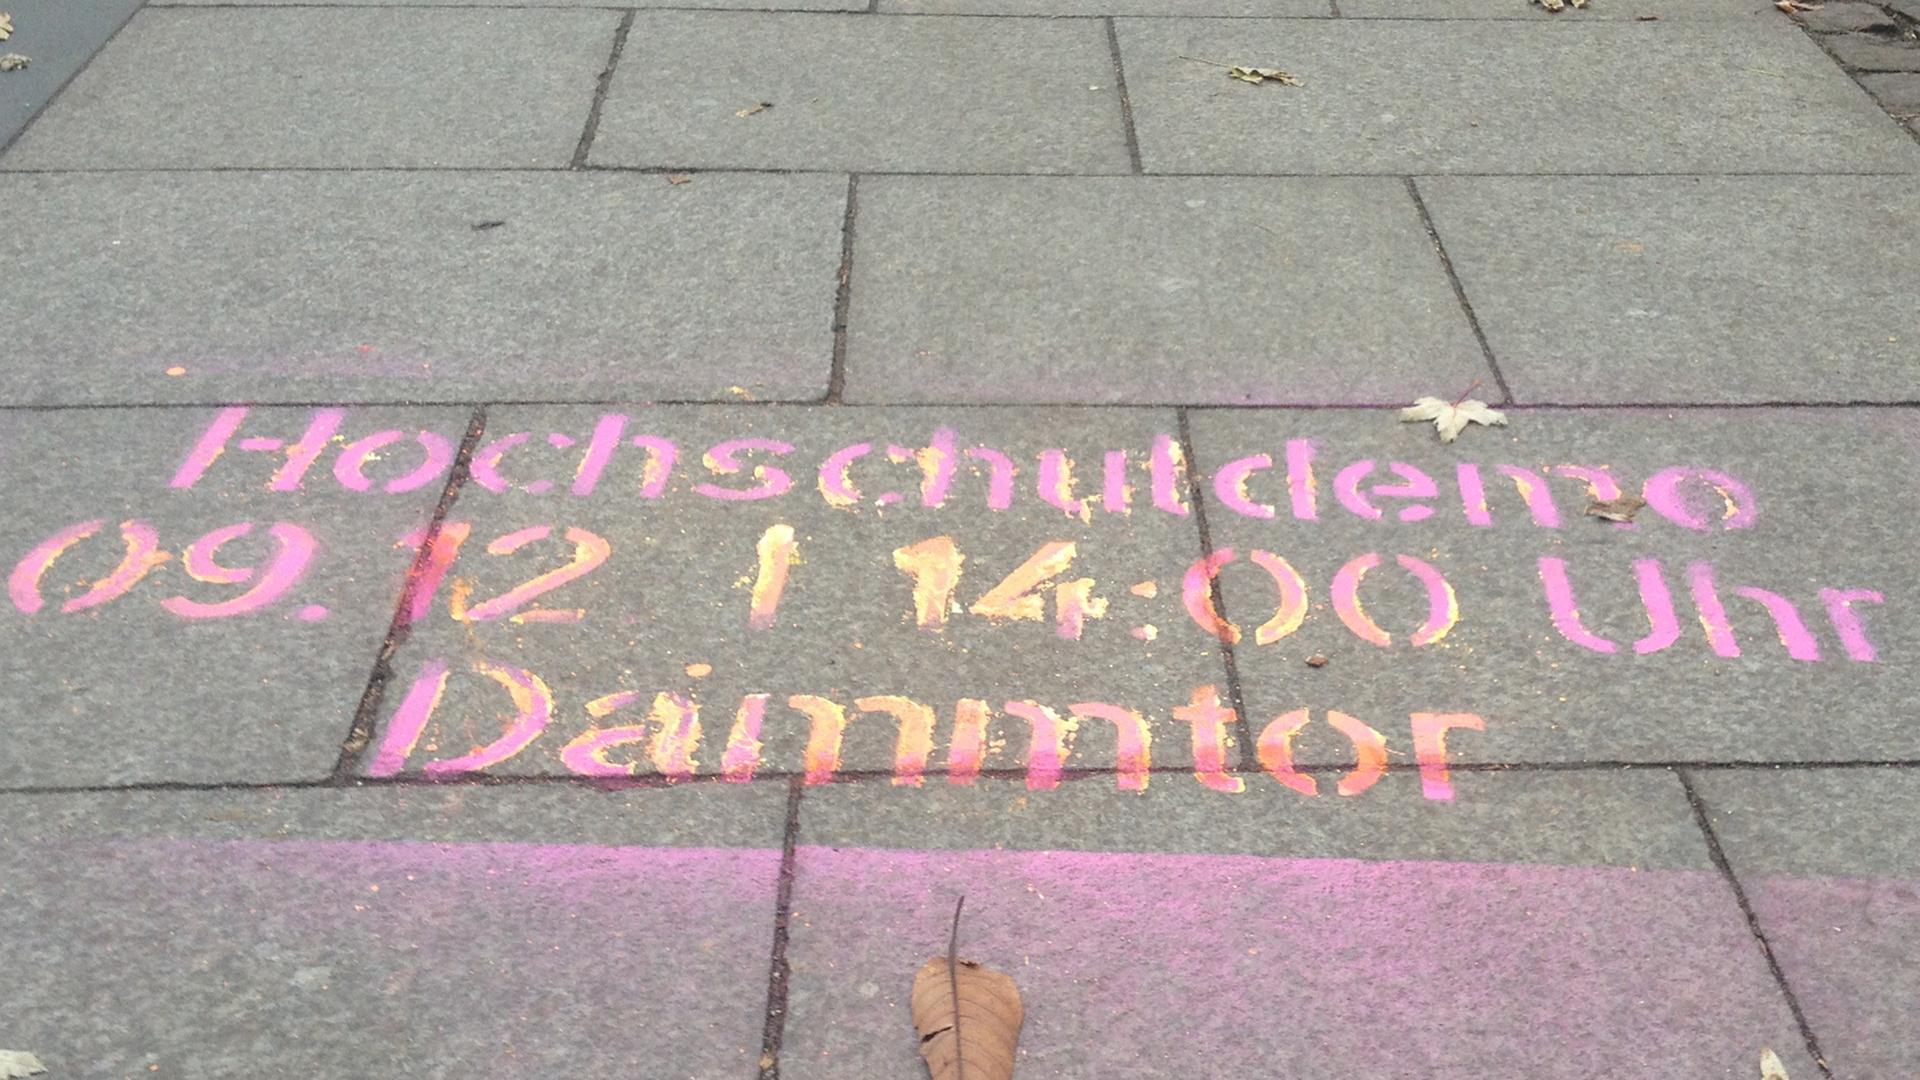 Demo in Hamburg - Unis erwarten Heißen Herbst